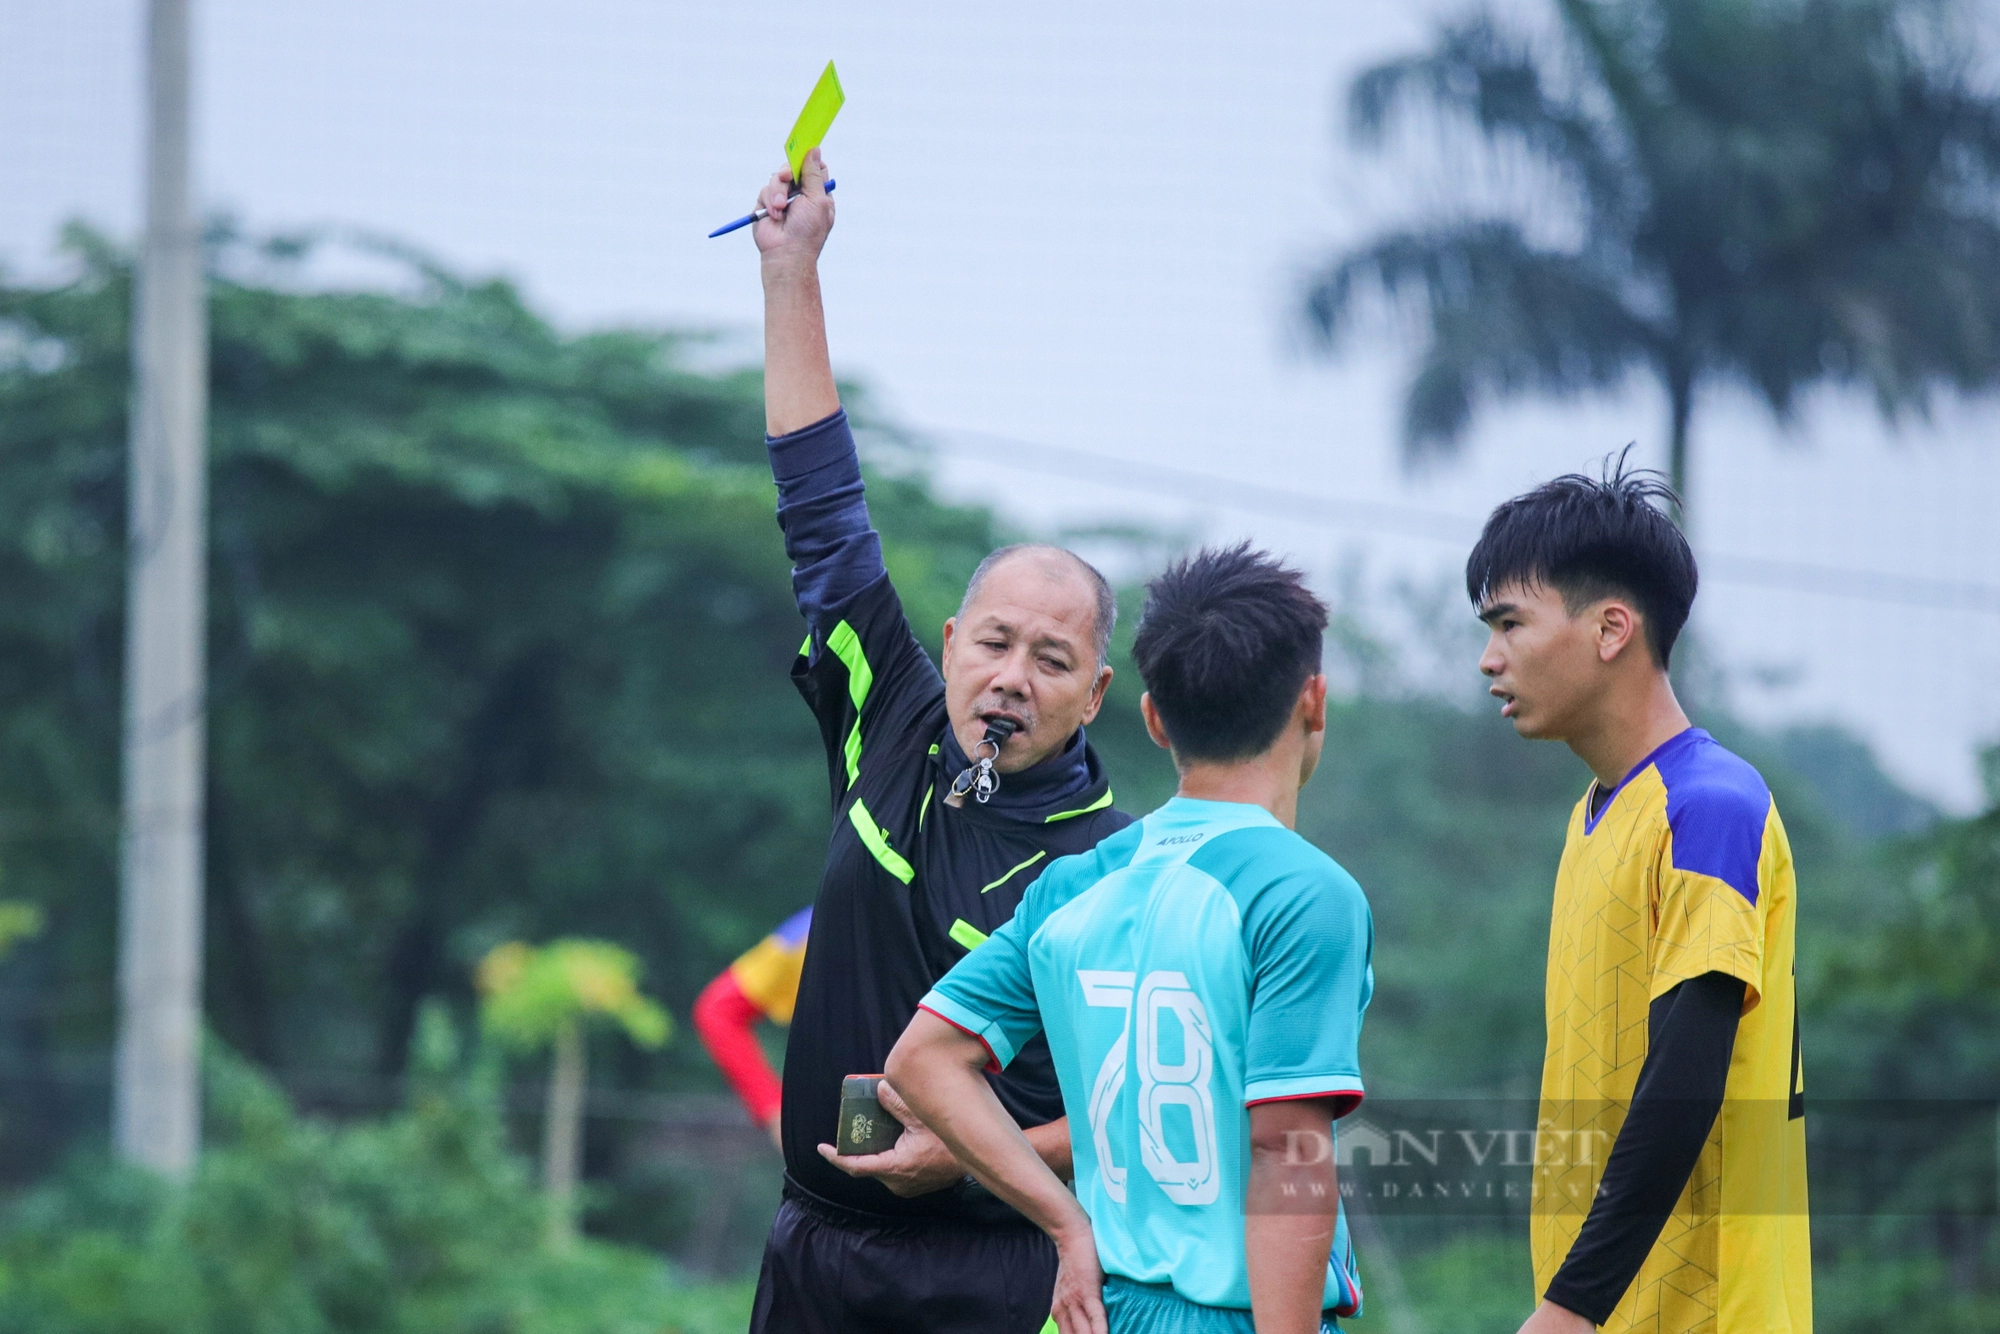 Lội ngược dòng ngoạn mục: Đội bóng Báo NTNN/Dân Việt giành vé vào chơi trận chung kết - Ảnh 6.